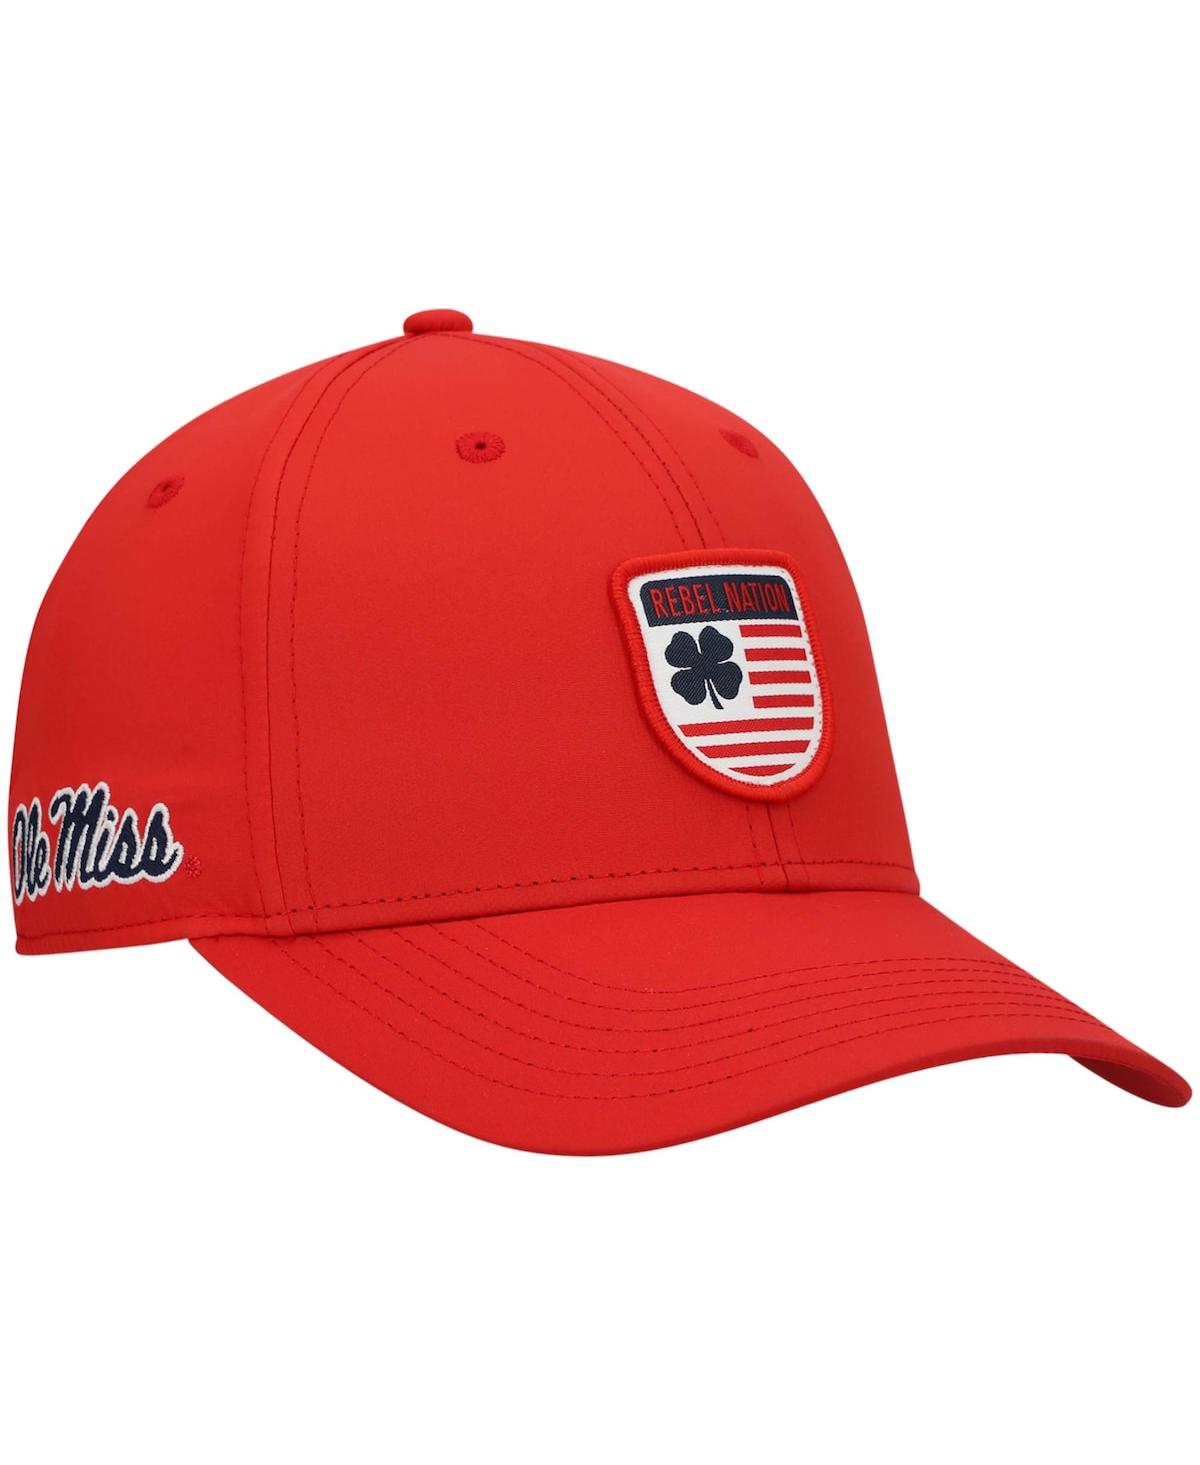 Shop Black Clover Men's Red Ole Miss Rebels Nation Shield Snapback Hat